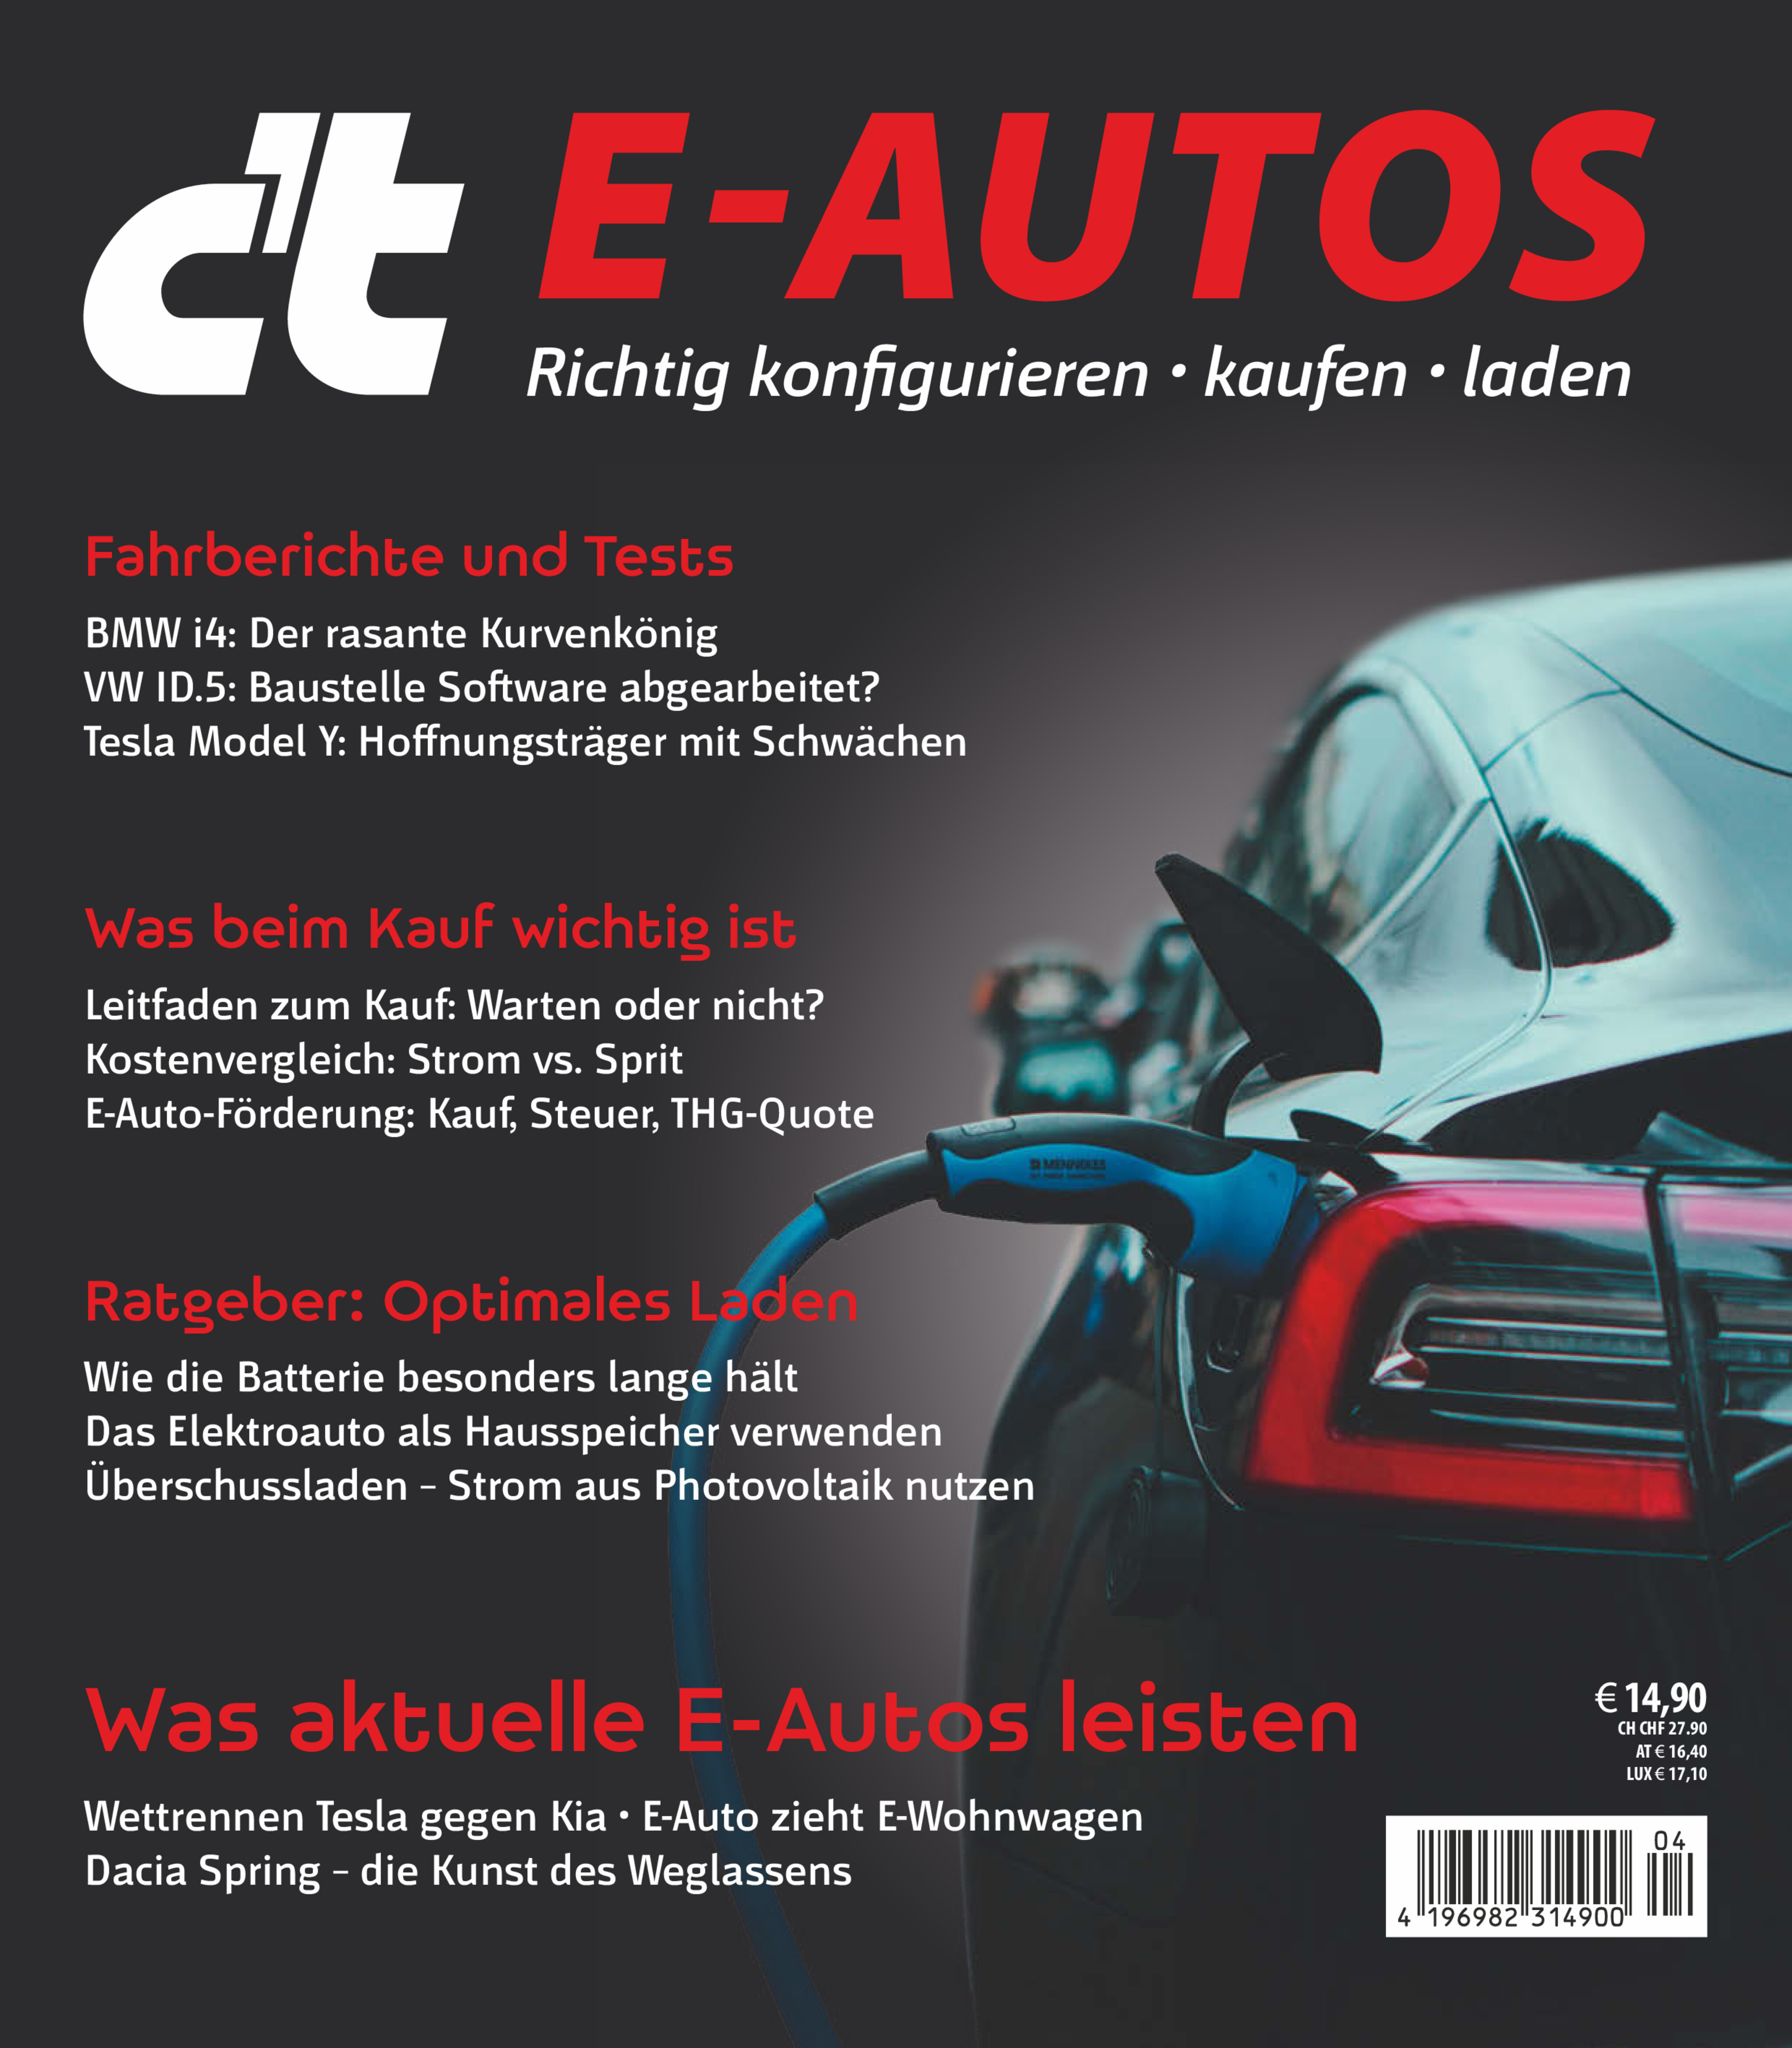 c't E-Autos 2022/23